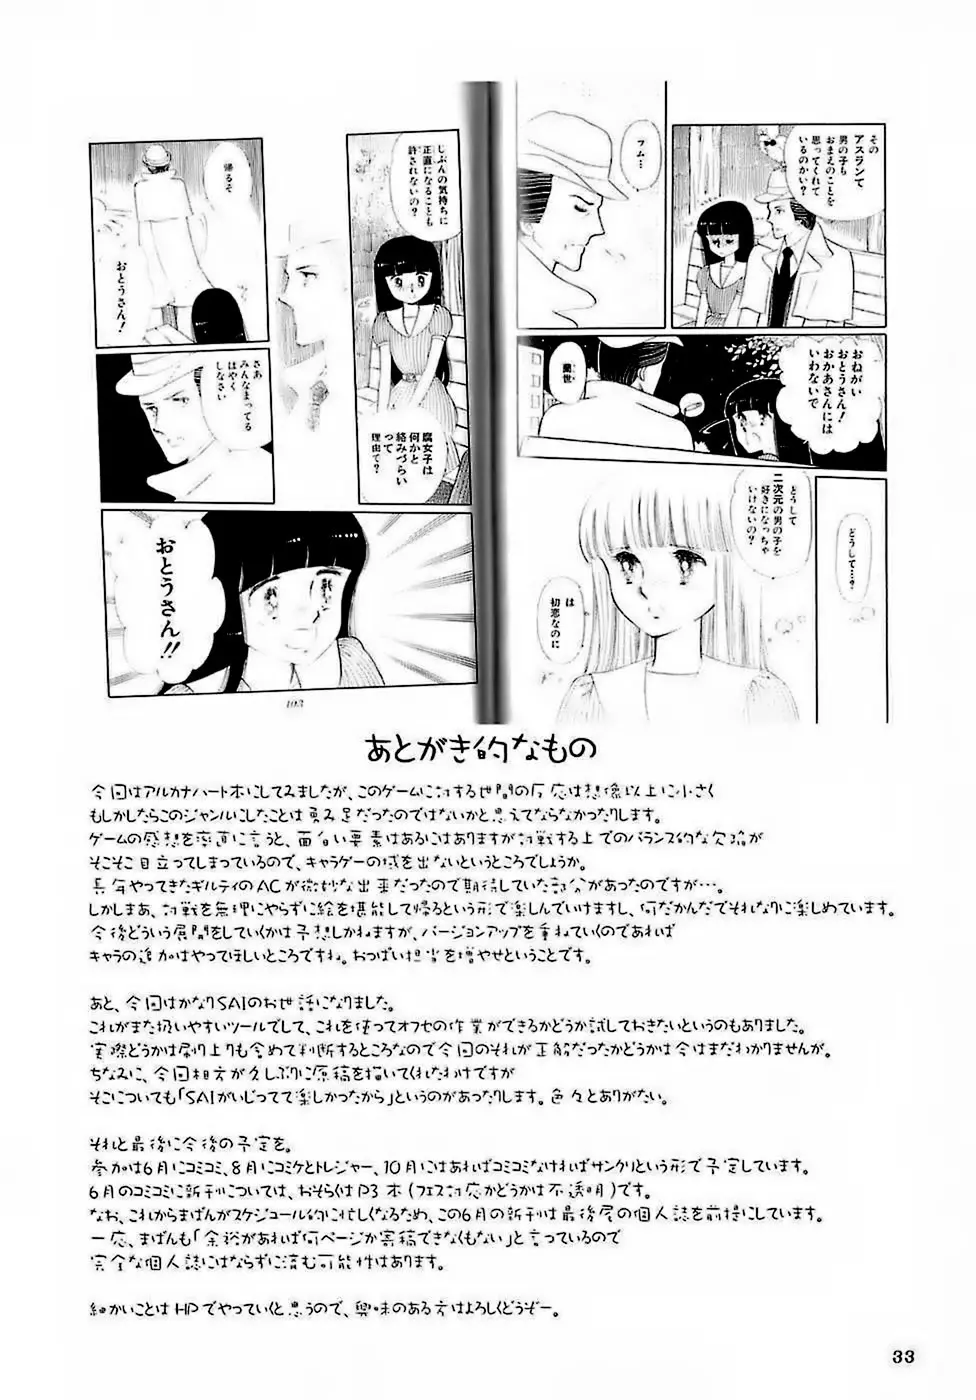 H専vol. 15 -エロティカル・フィエステリア・ピシシーダ- 32ページ